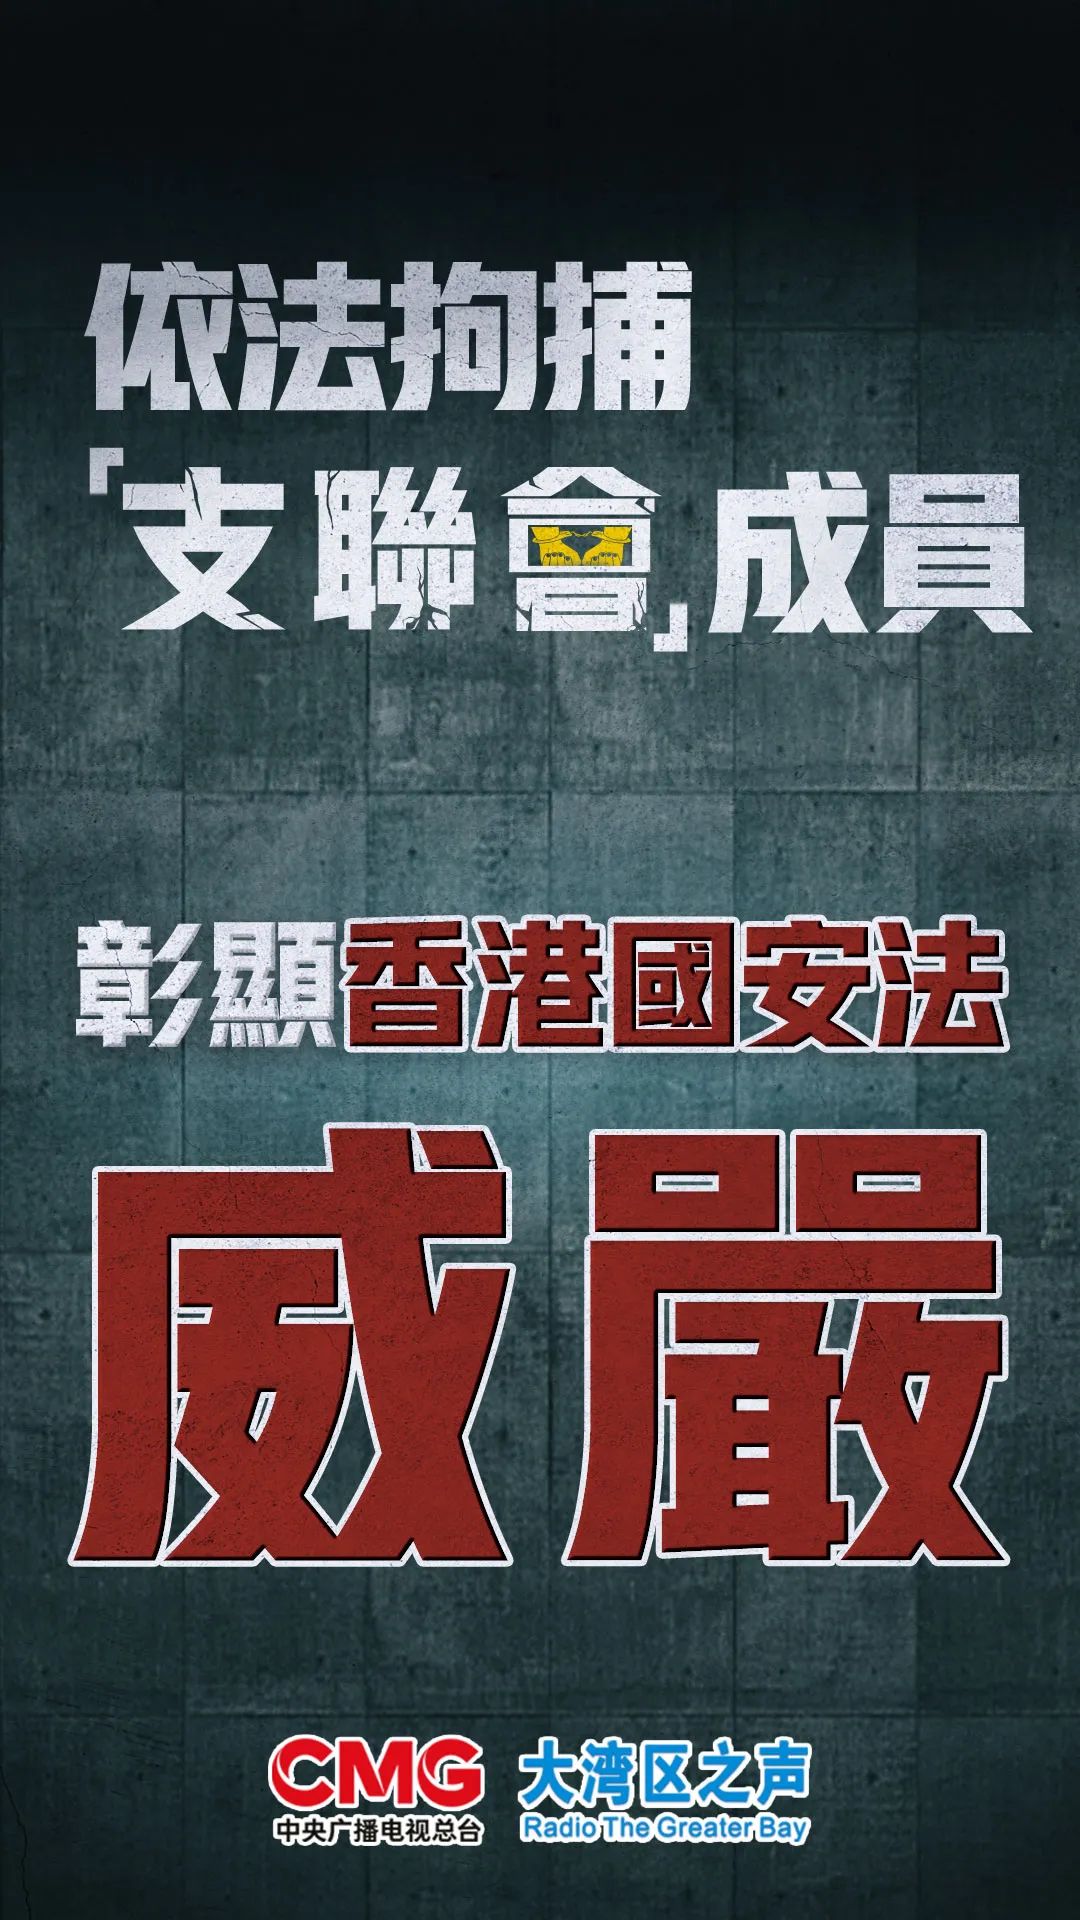 大湾区之声热评依法拘捕支联会成员彰显香港国安法威严